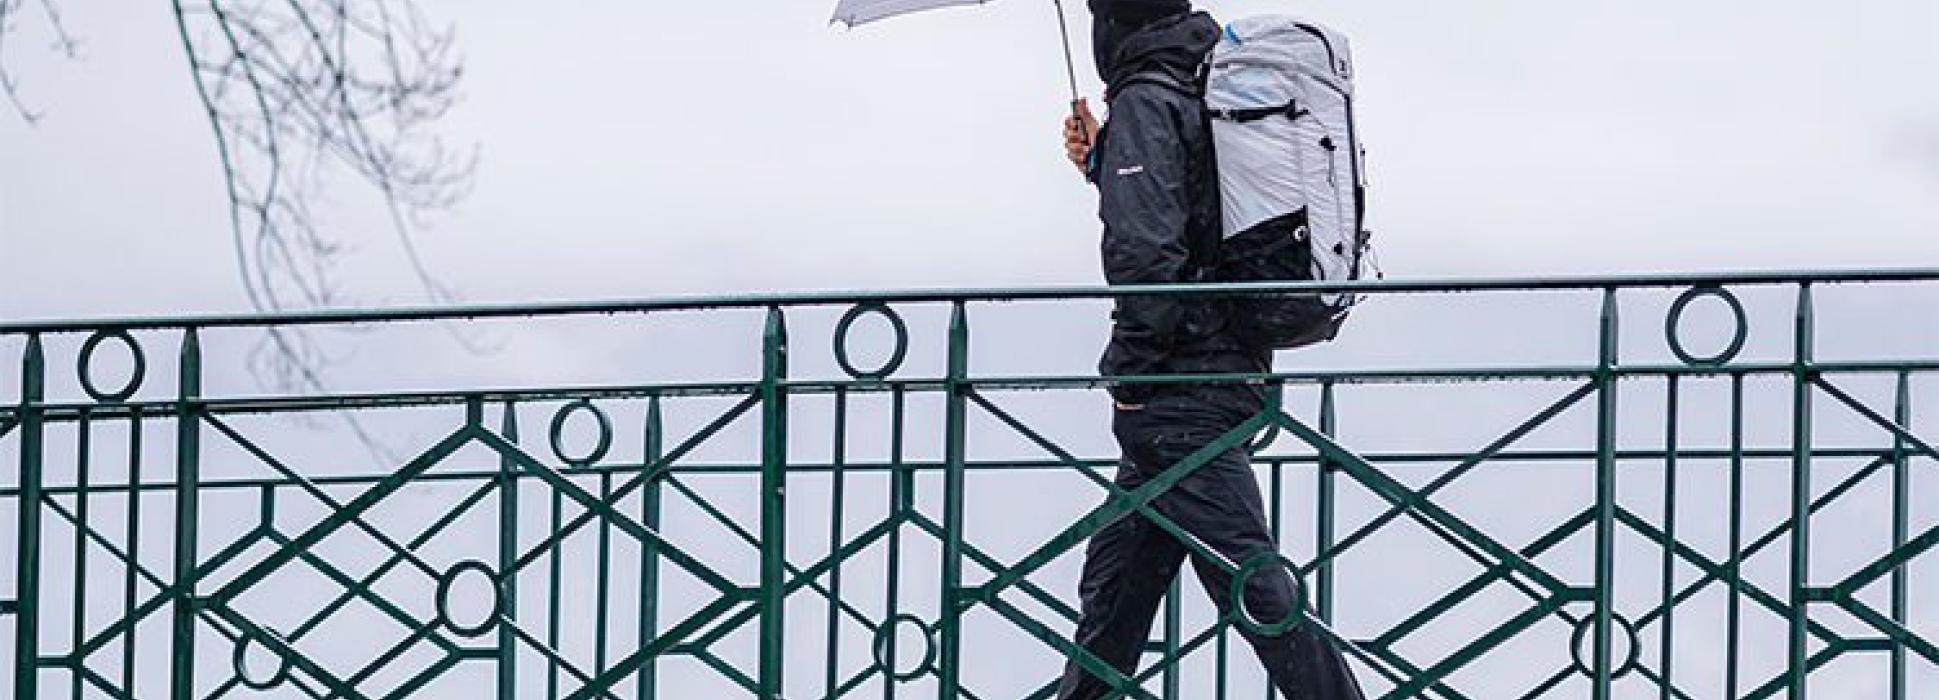 Le Parapluie de Cherbourg s’associe avec NEO